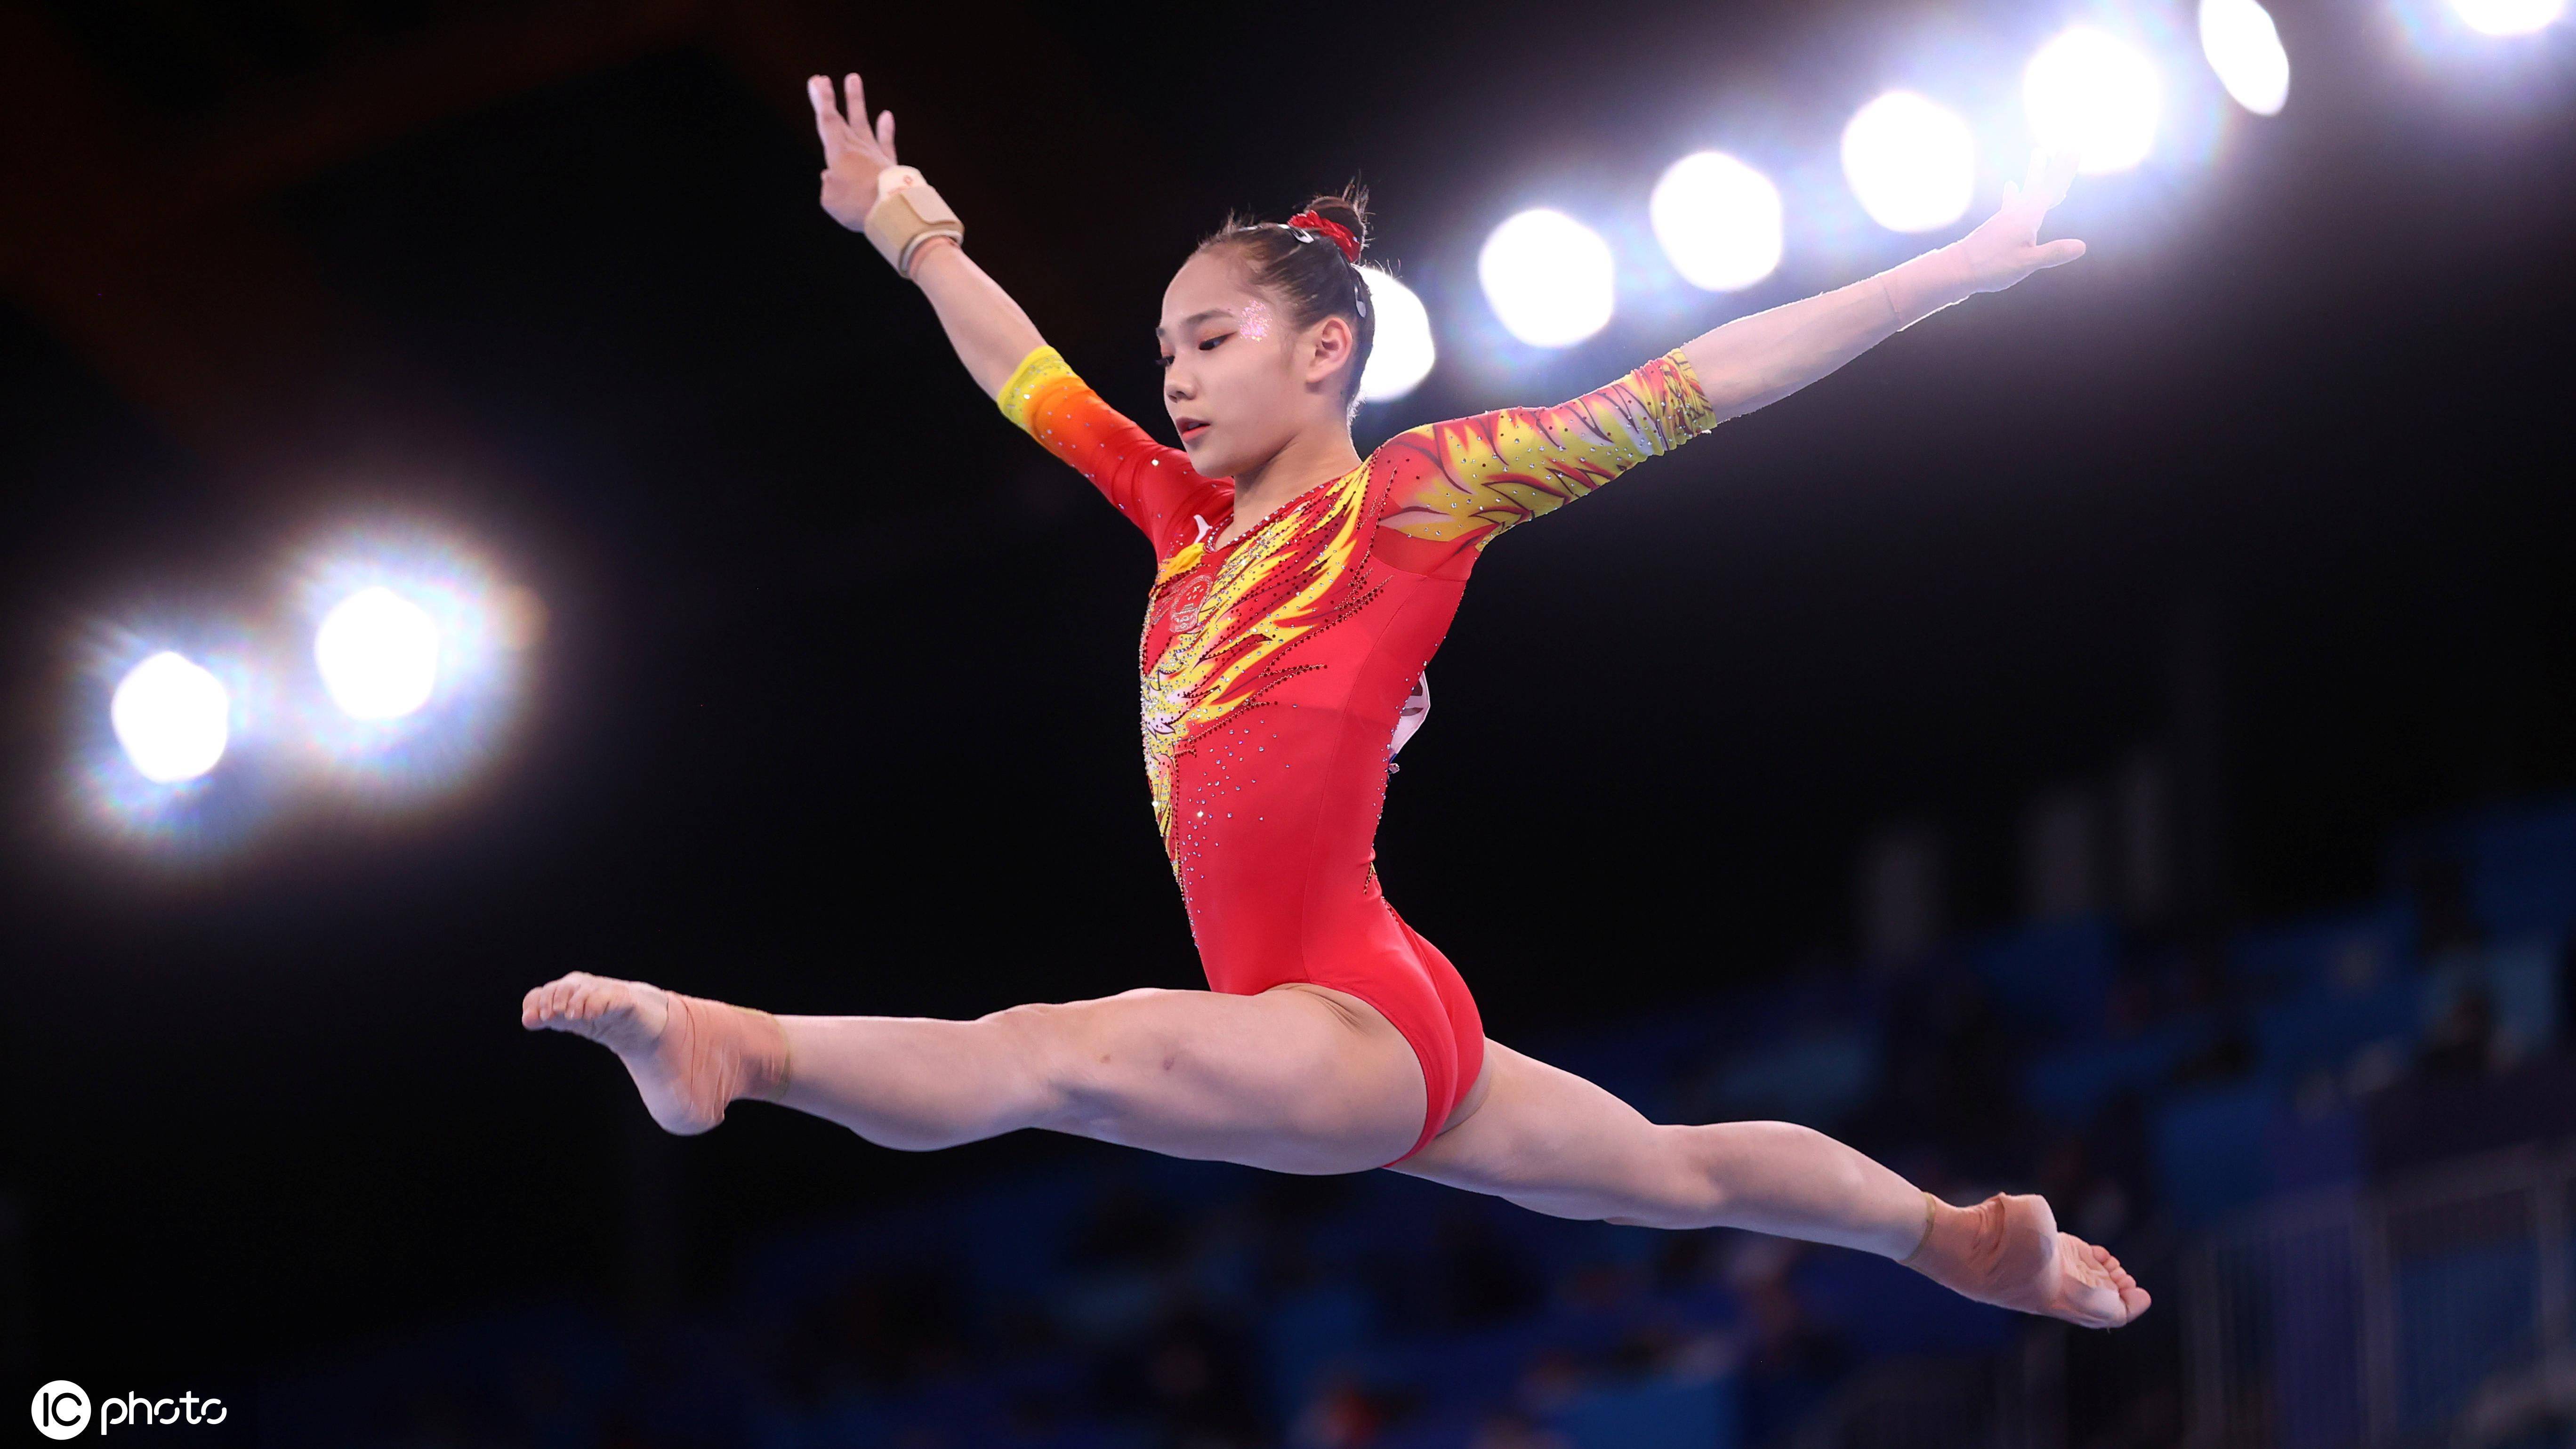 唐茜靖,2003年1月3日出生于广东,曾获2018年第三届青奥会体操女子平衡